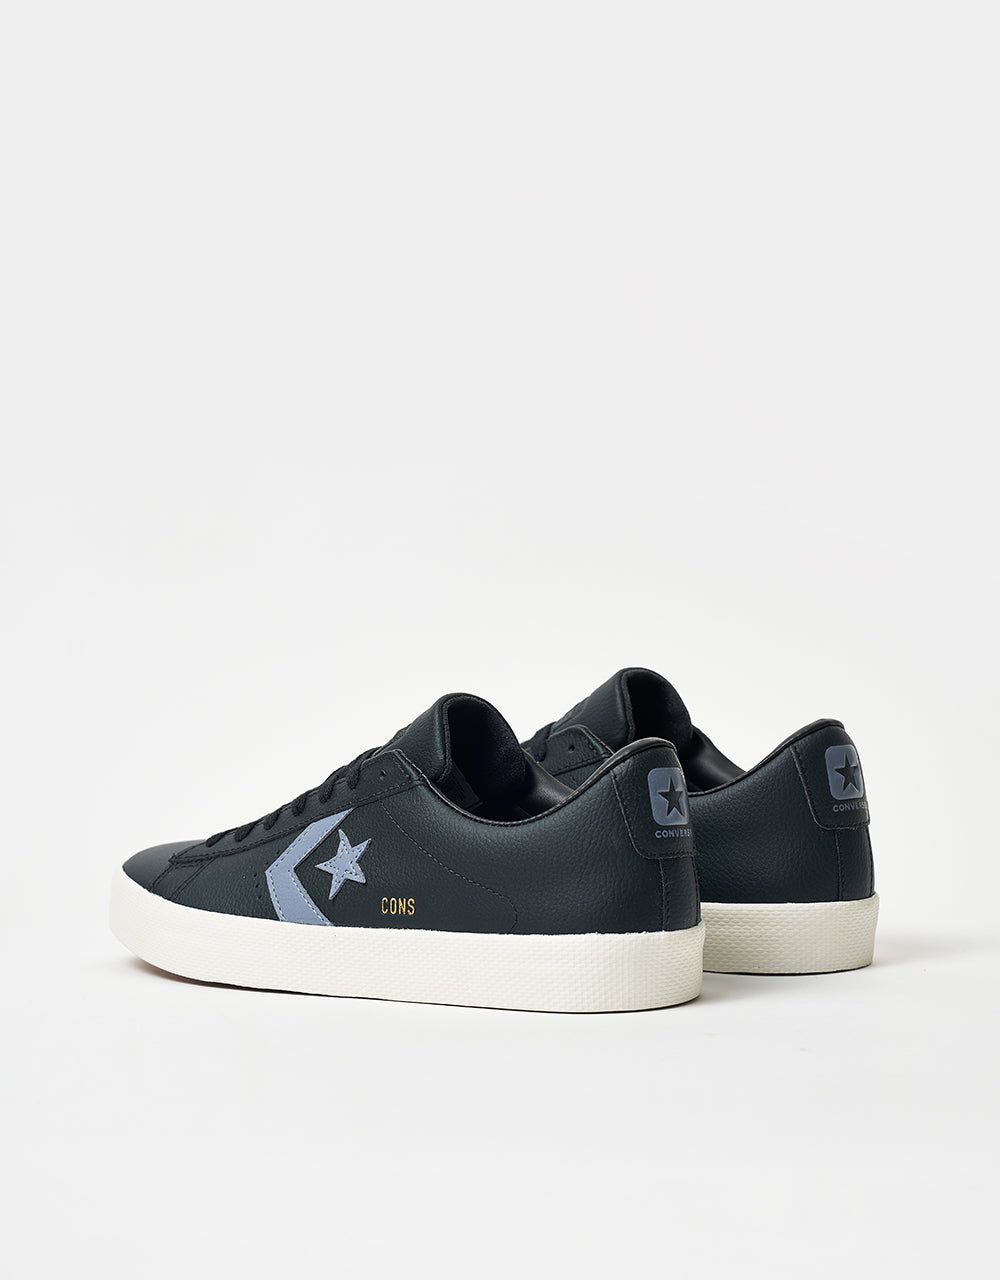 Converse PL Vulc Pro Skate Shoes - Black/Lunar Grey/Egret